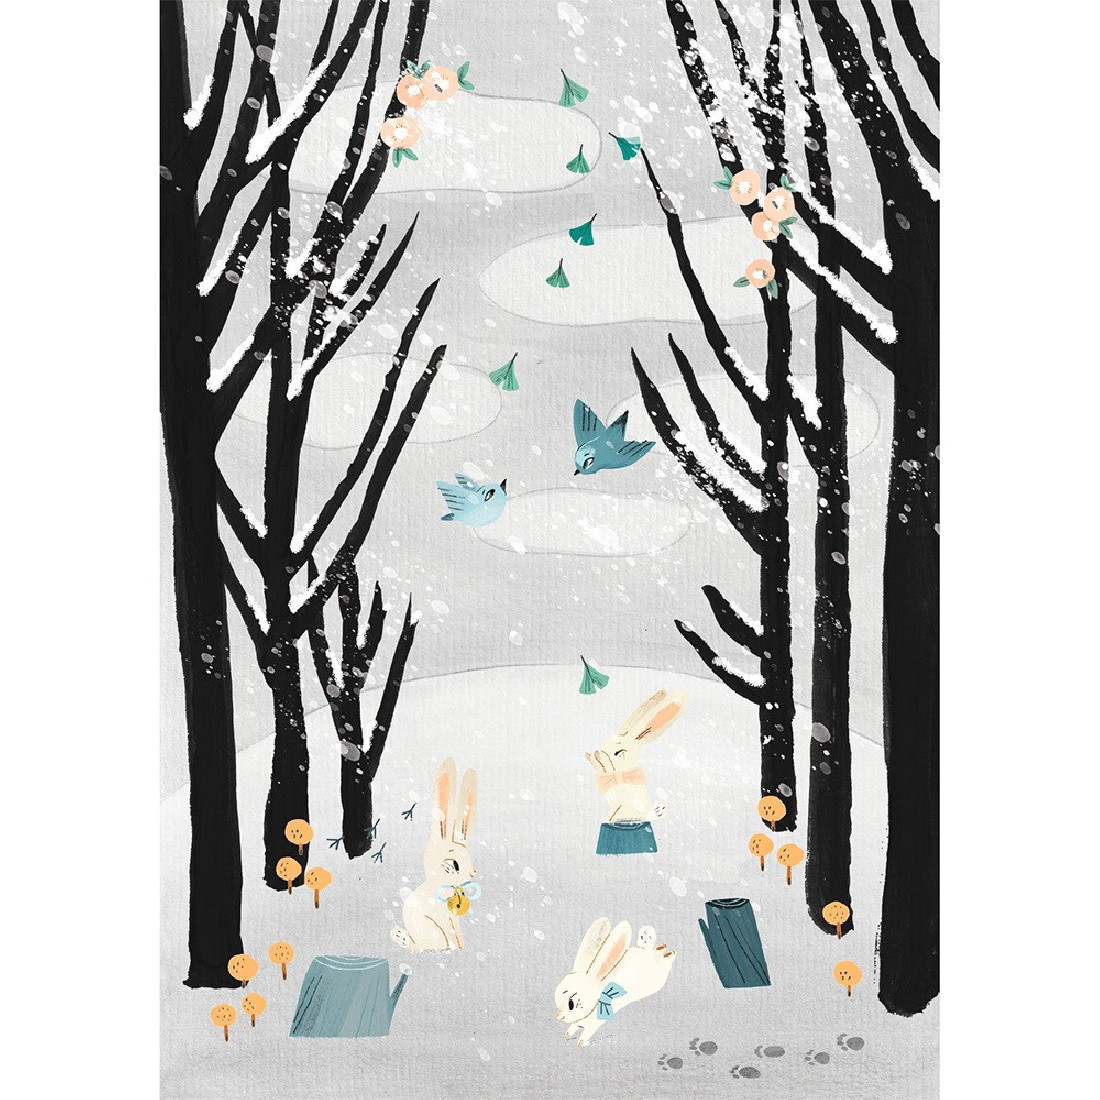 Ζωγραφίζω ασπρόμαυρα τοπία με Πολύχωμες χαλκομανίες The last snowfall 09349 Djeco